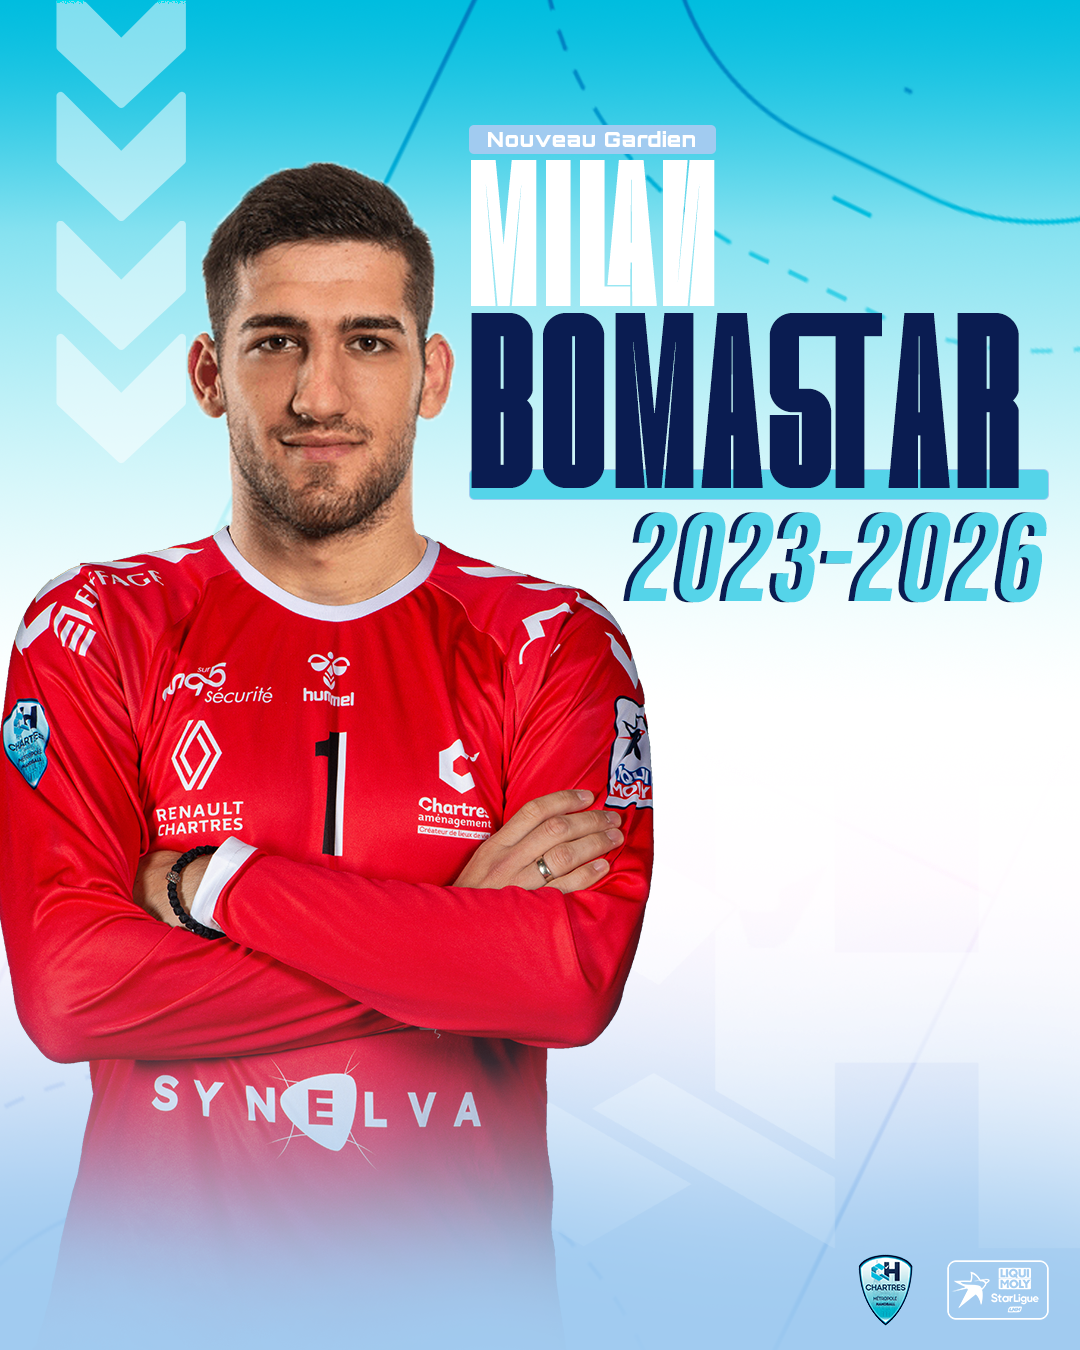 Officiel : Milan BOMASTAR, nouveau gardien du C'CMHB pour 3 saisons 